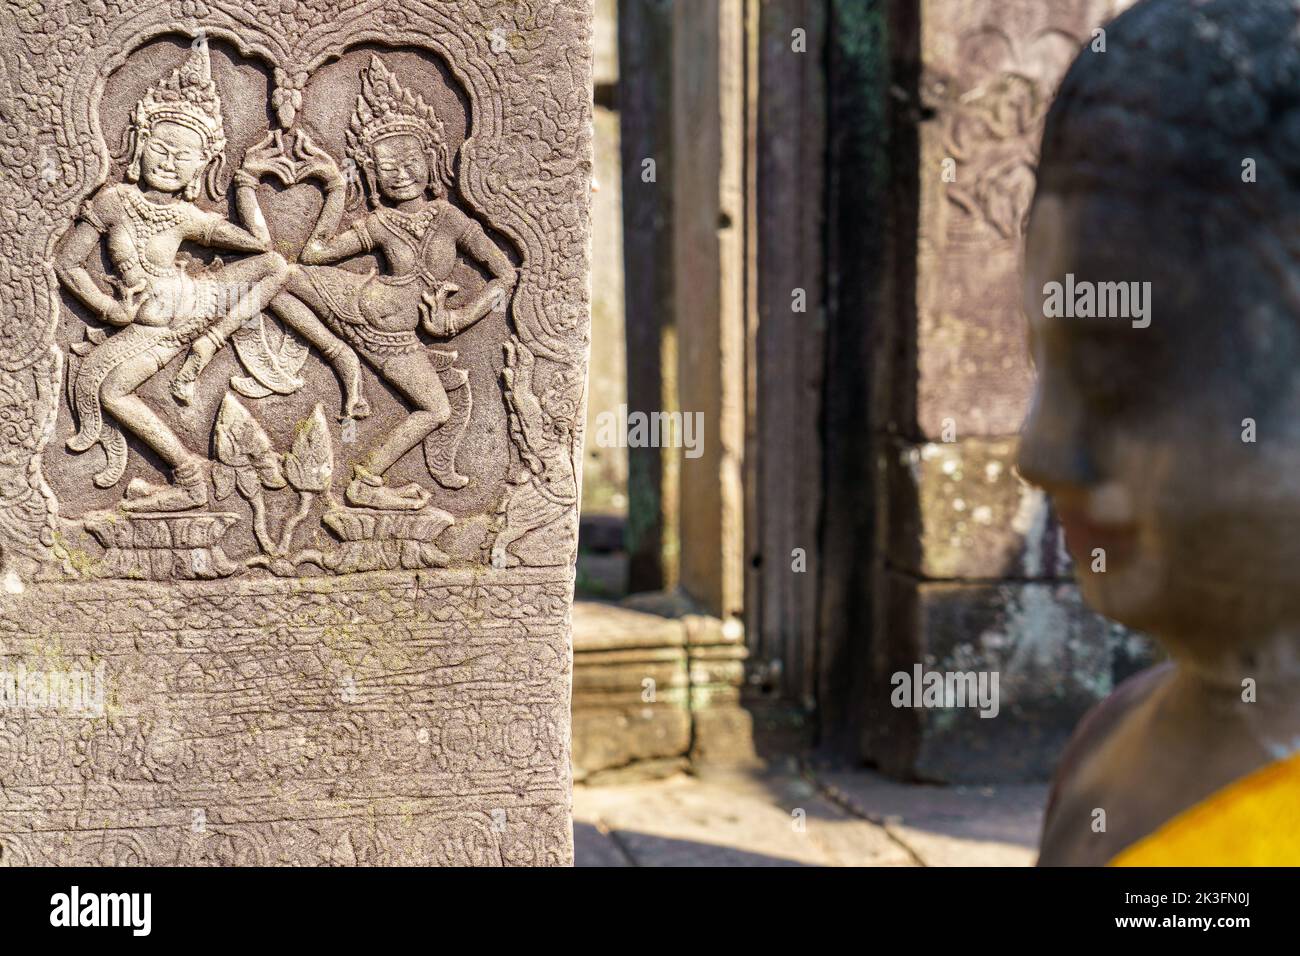 Camboya. Siem Riep. El parque arqueológico de Angkor. un bajorrelieve de la bailarina de Aspara en el templo hindú del siglo 12th de Bayon Foto de stock